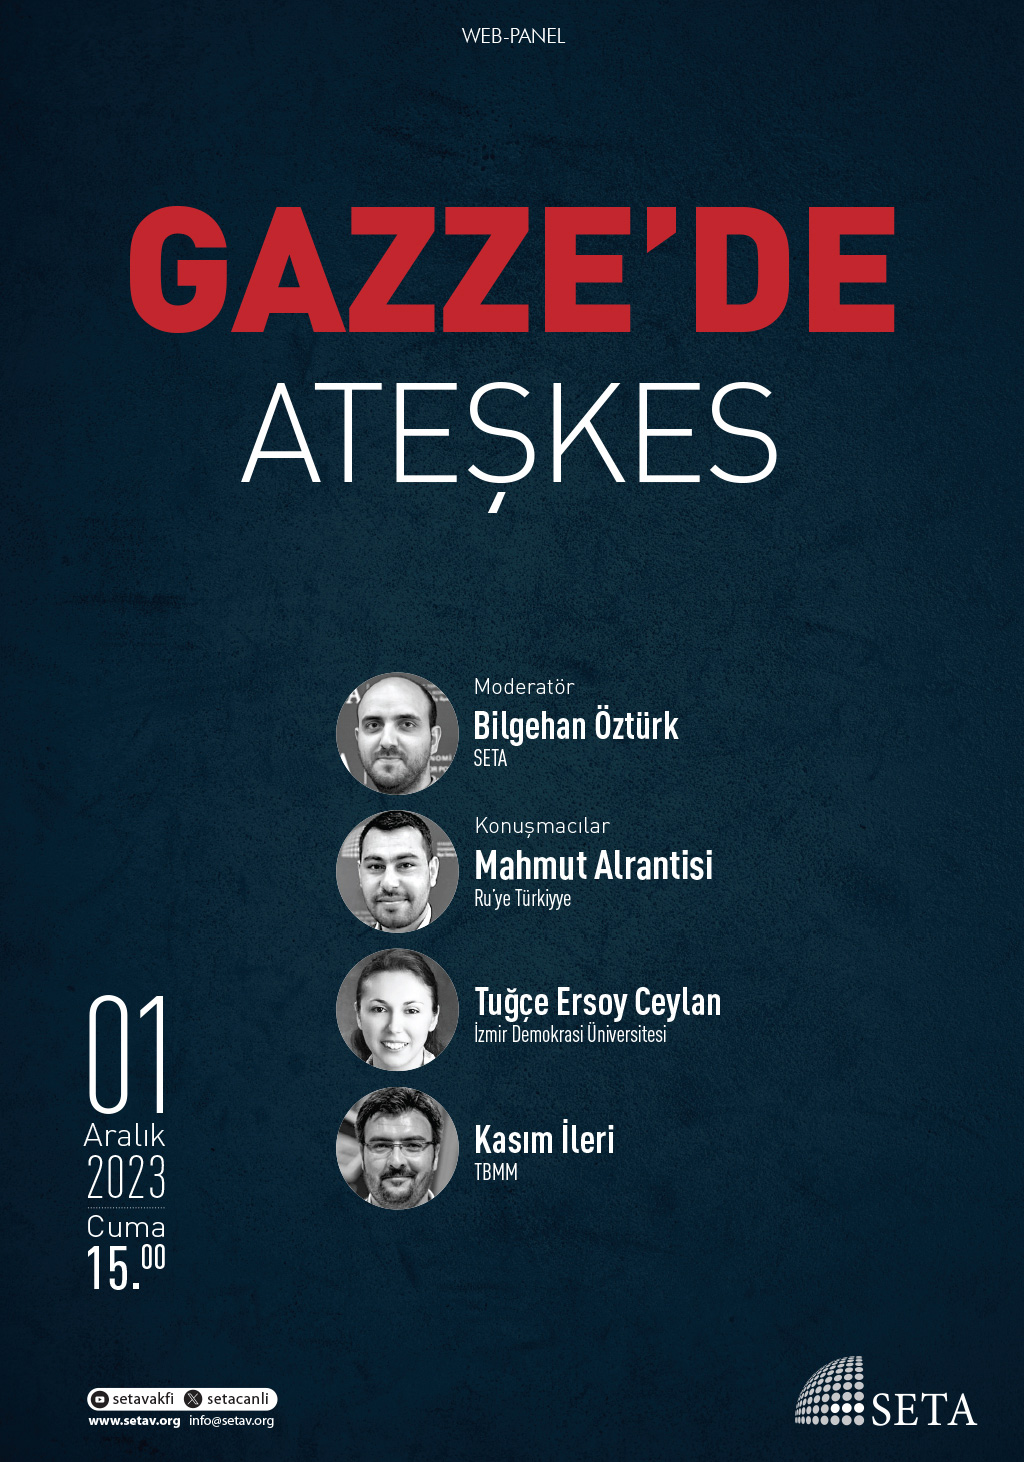 Web Panel: Gazze’de Ateşkes